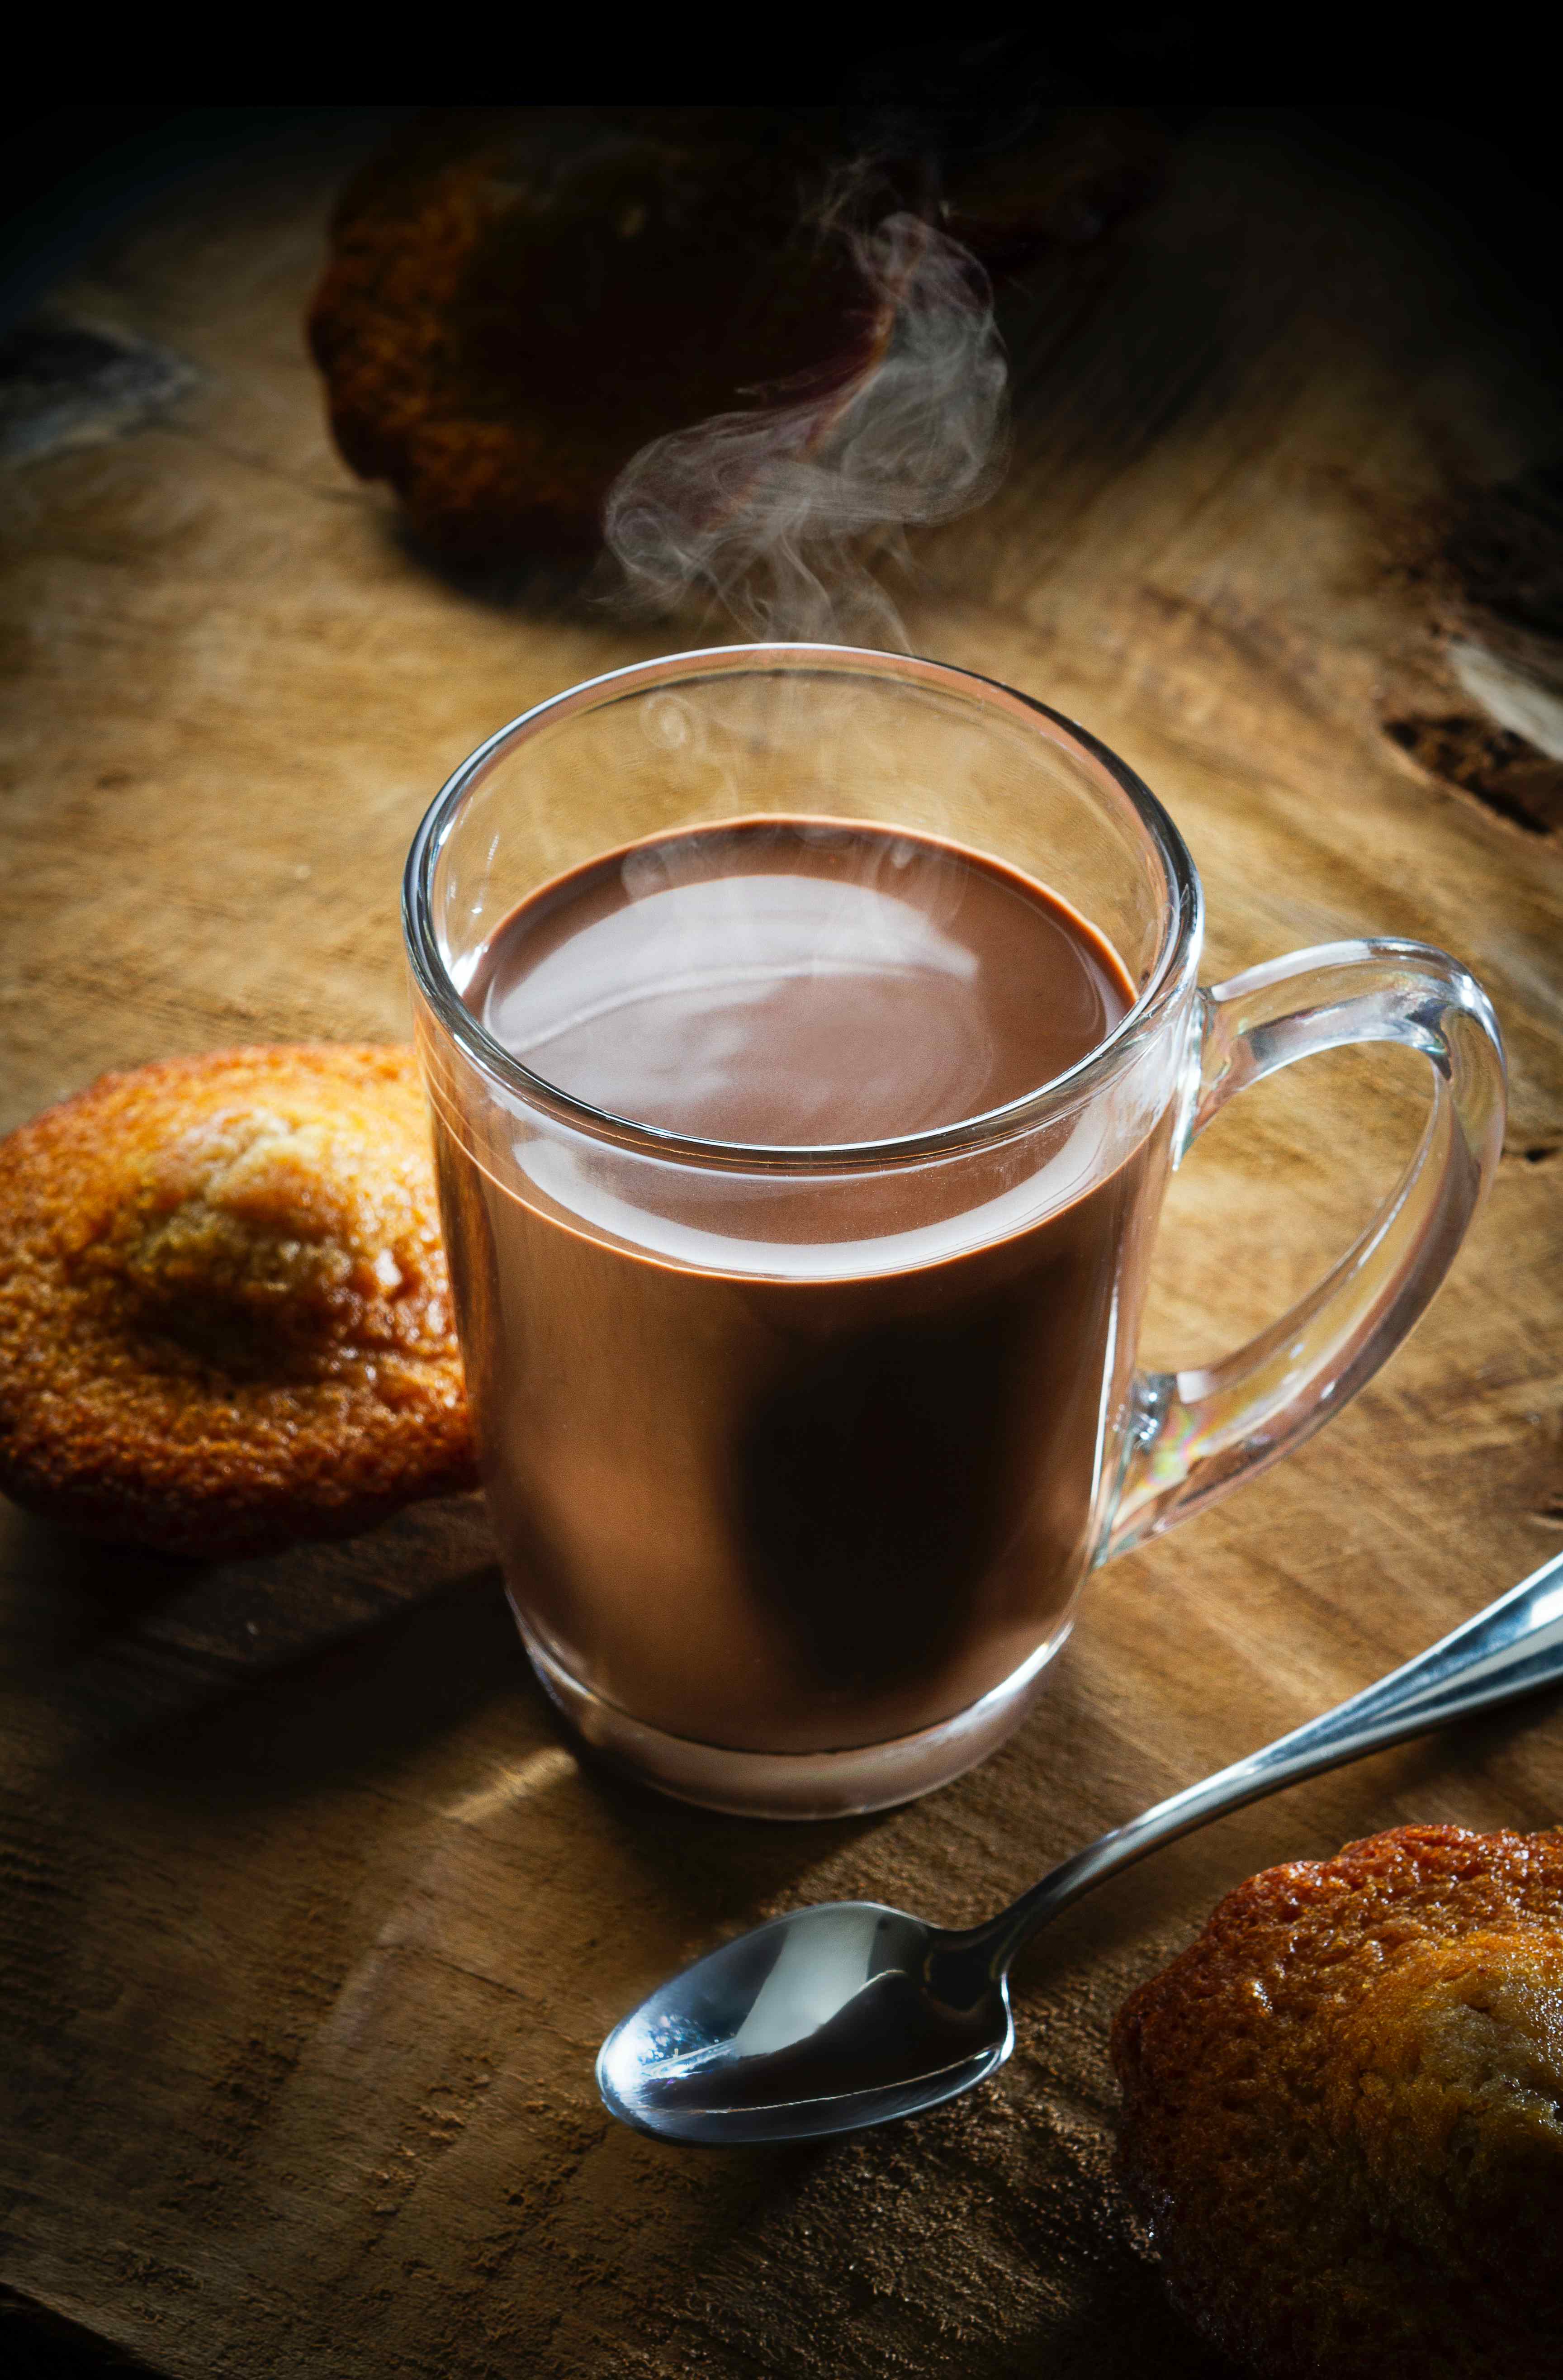 法國最大的巧克力品牌之一米歇爾・科茲（Michel Cluizel）也從2019年為他們經典的熱巧克力增添純素版本